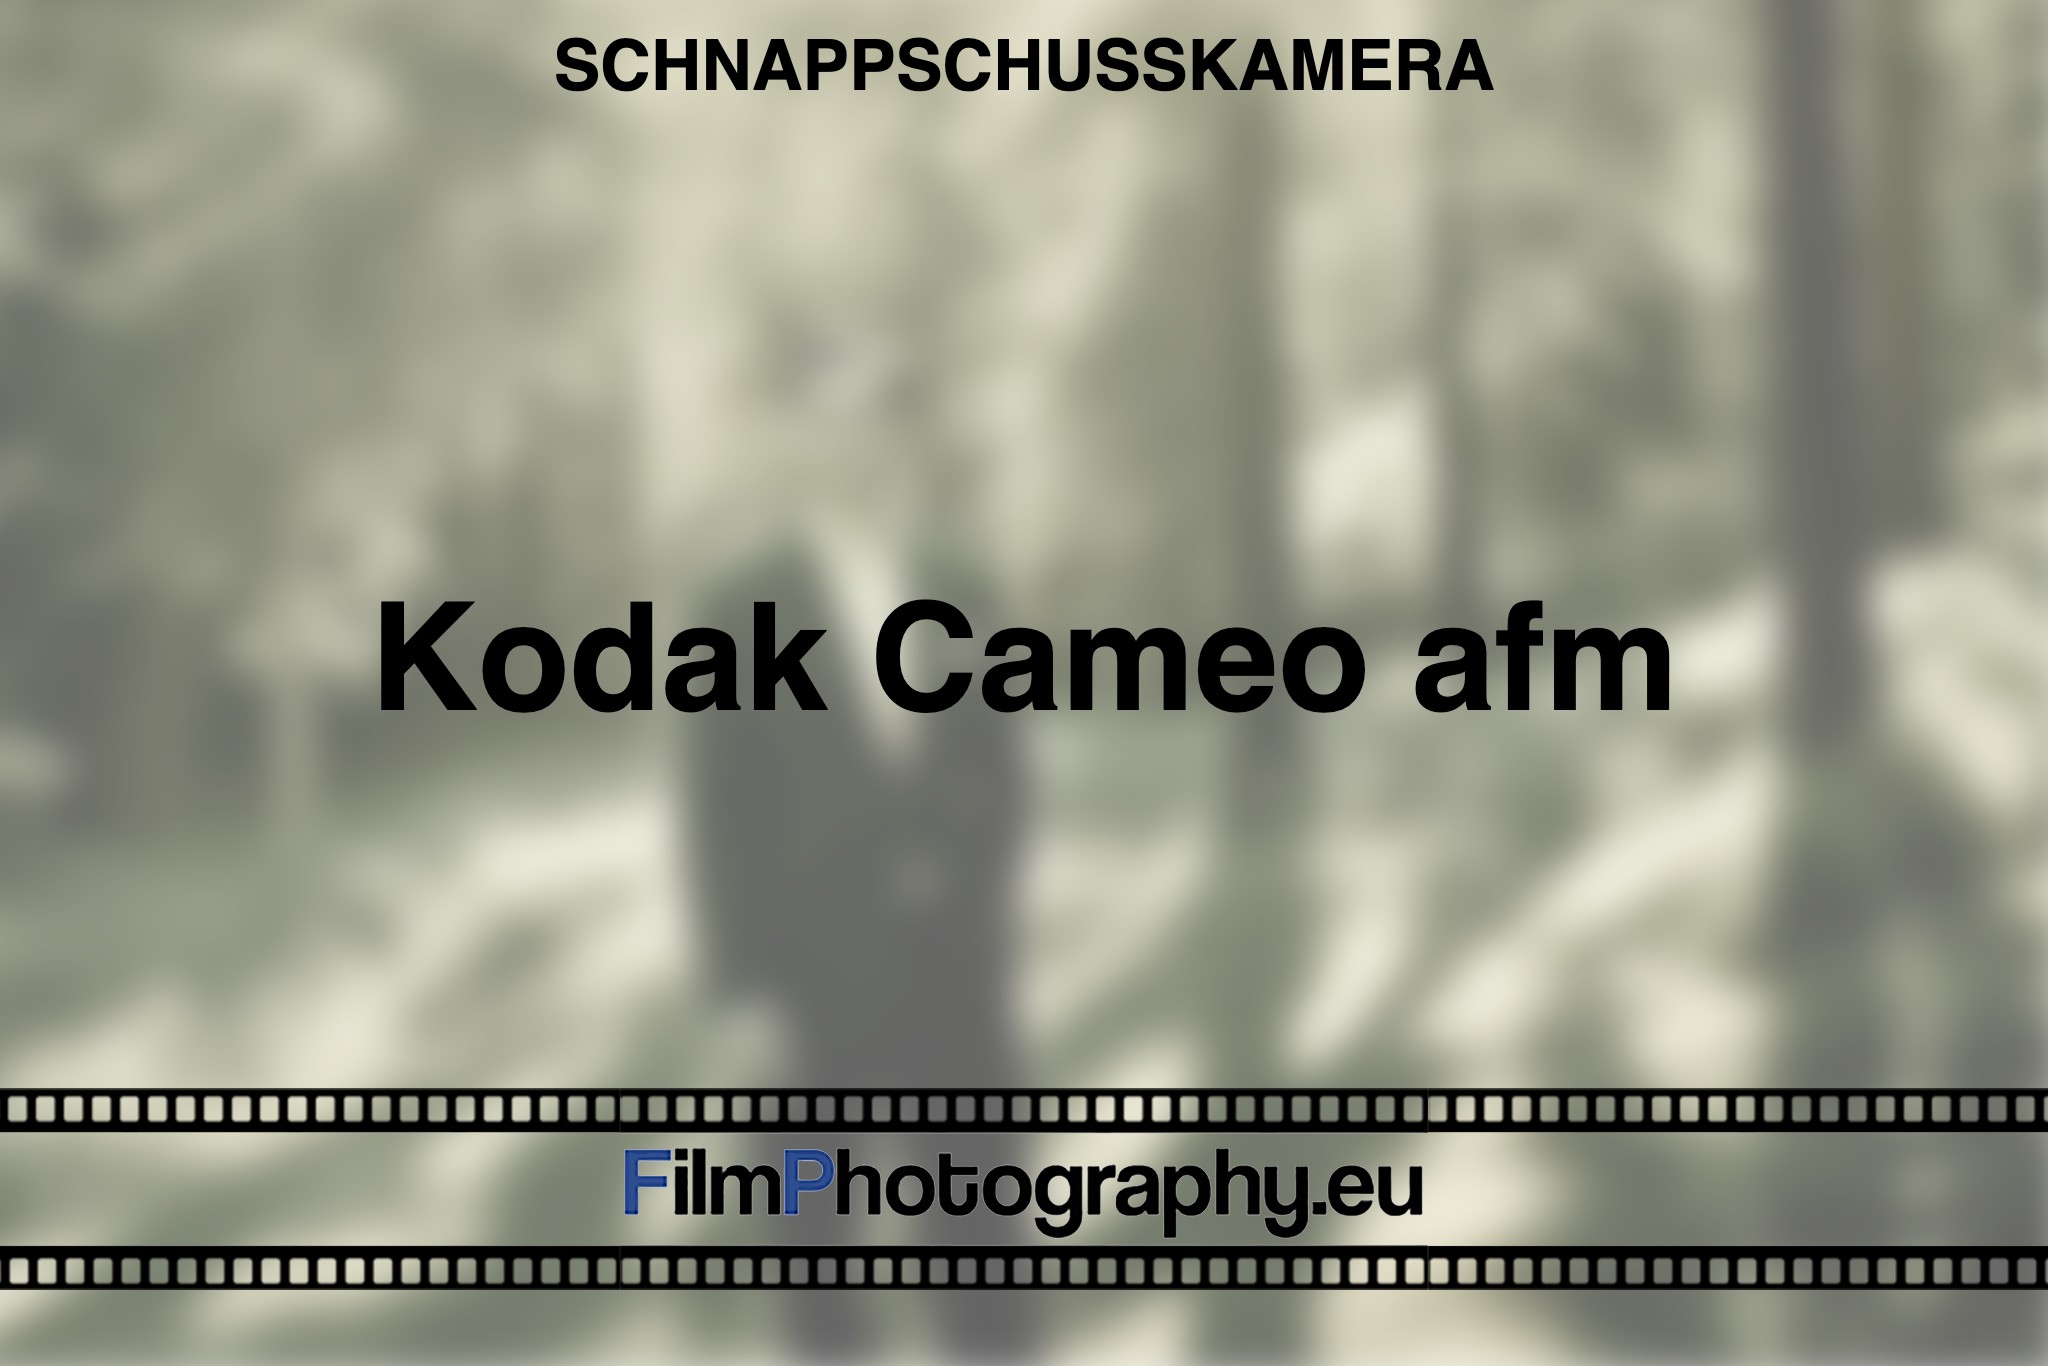 kodak-cameo-afm-schnappschusskamera-bnv